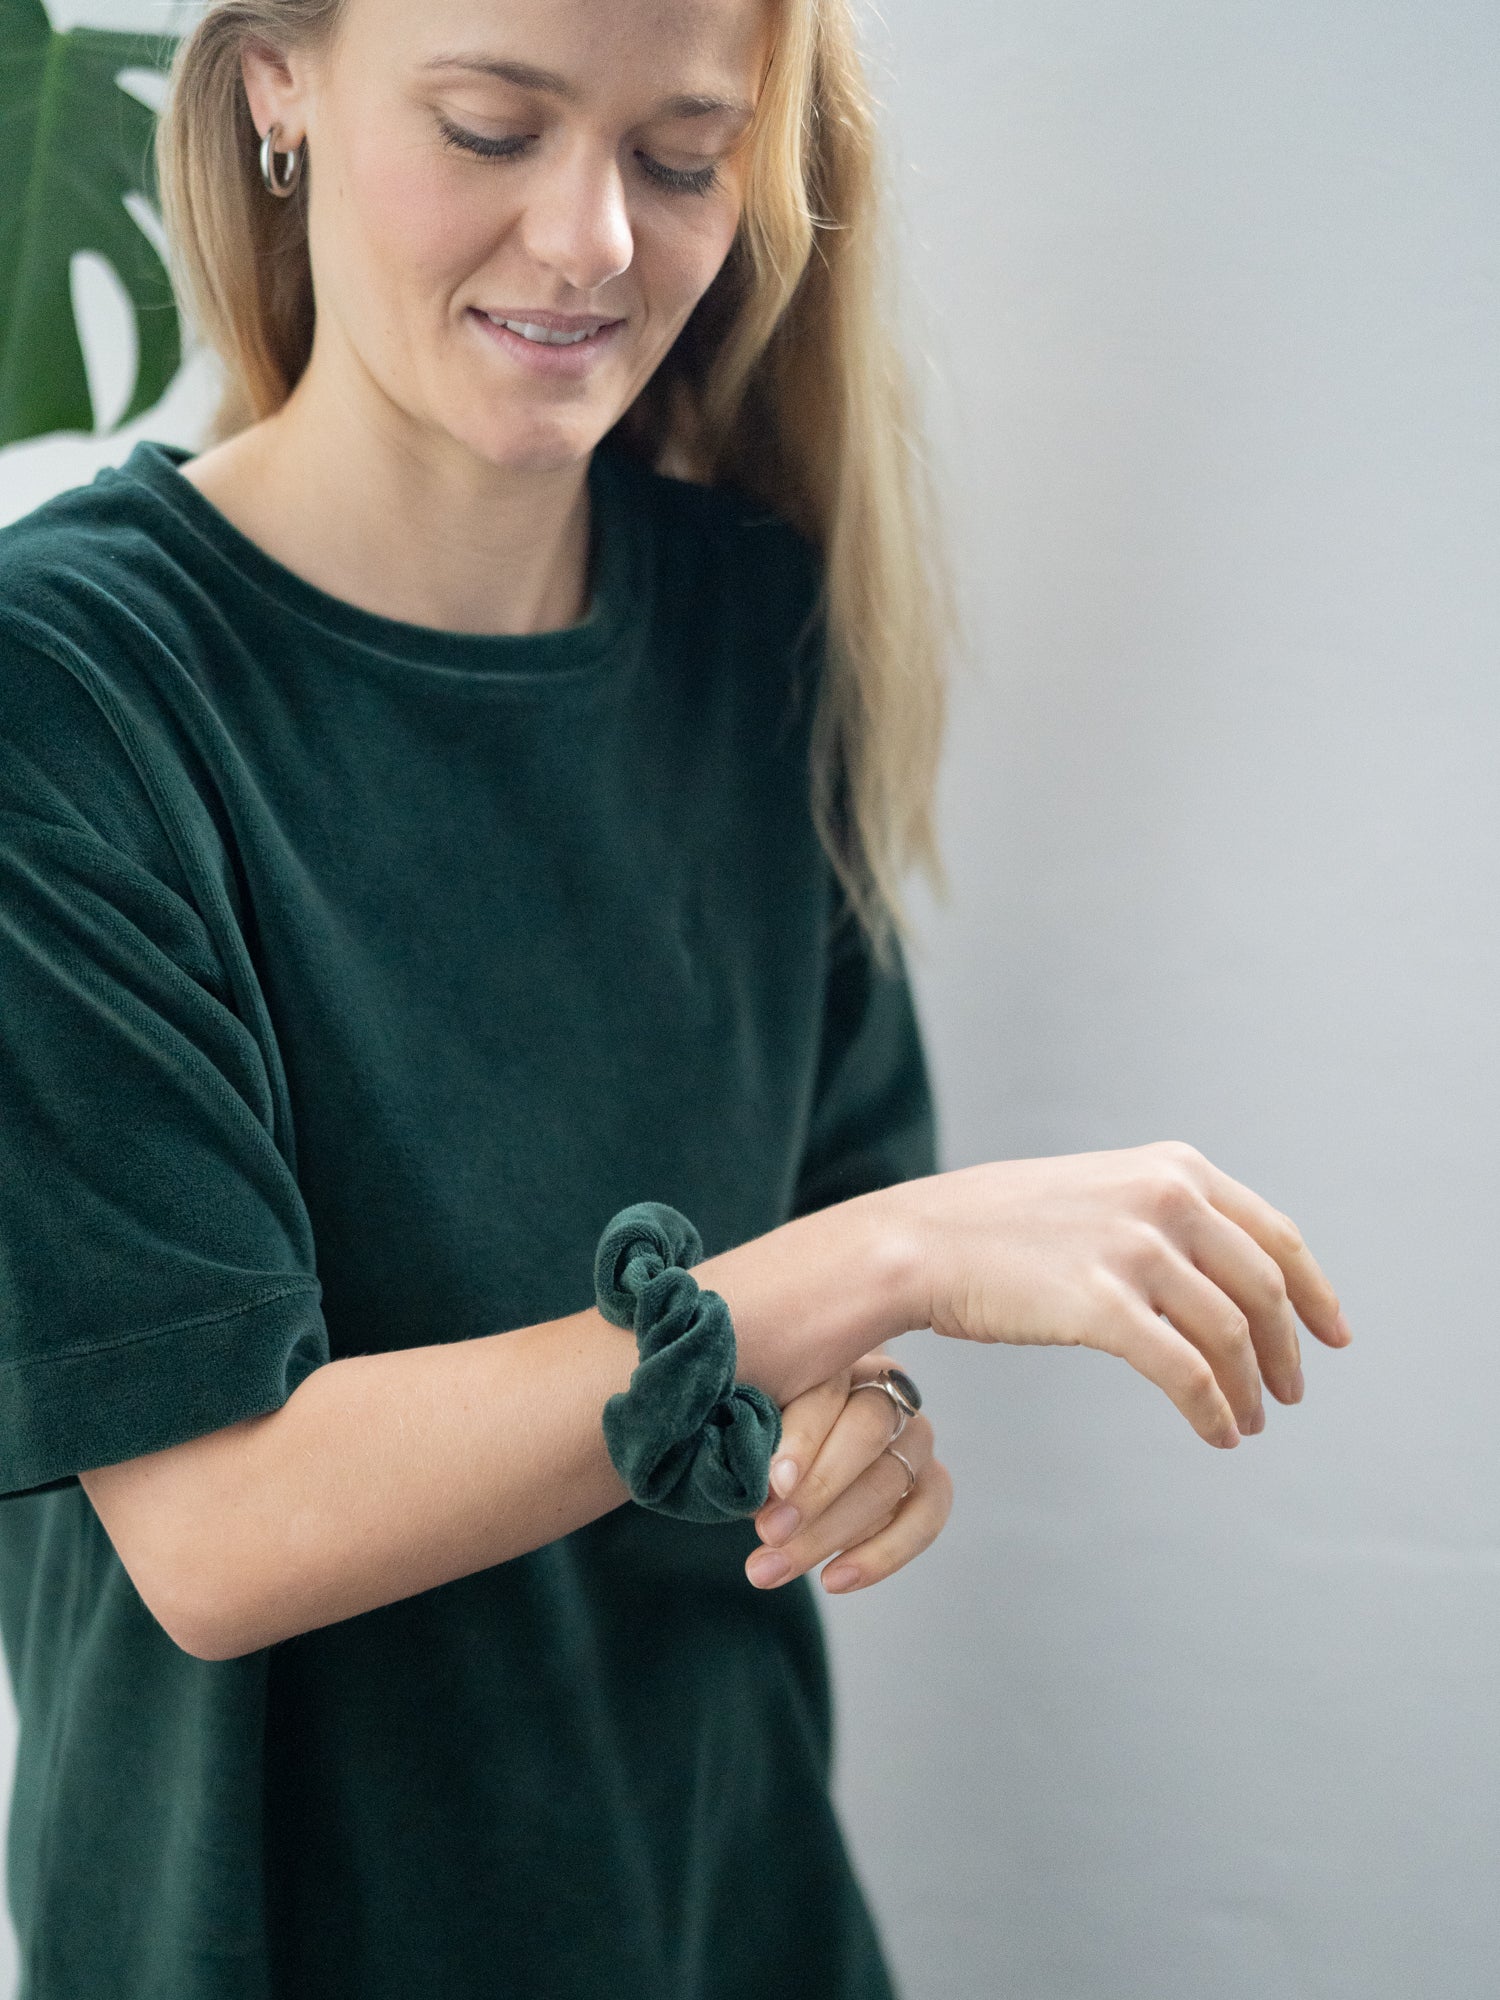 Greta trägt unser nachhaltiges und faires FUXBAU Scrunchie in grün am Arm.